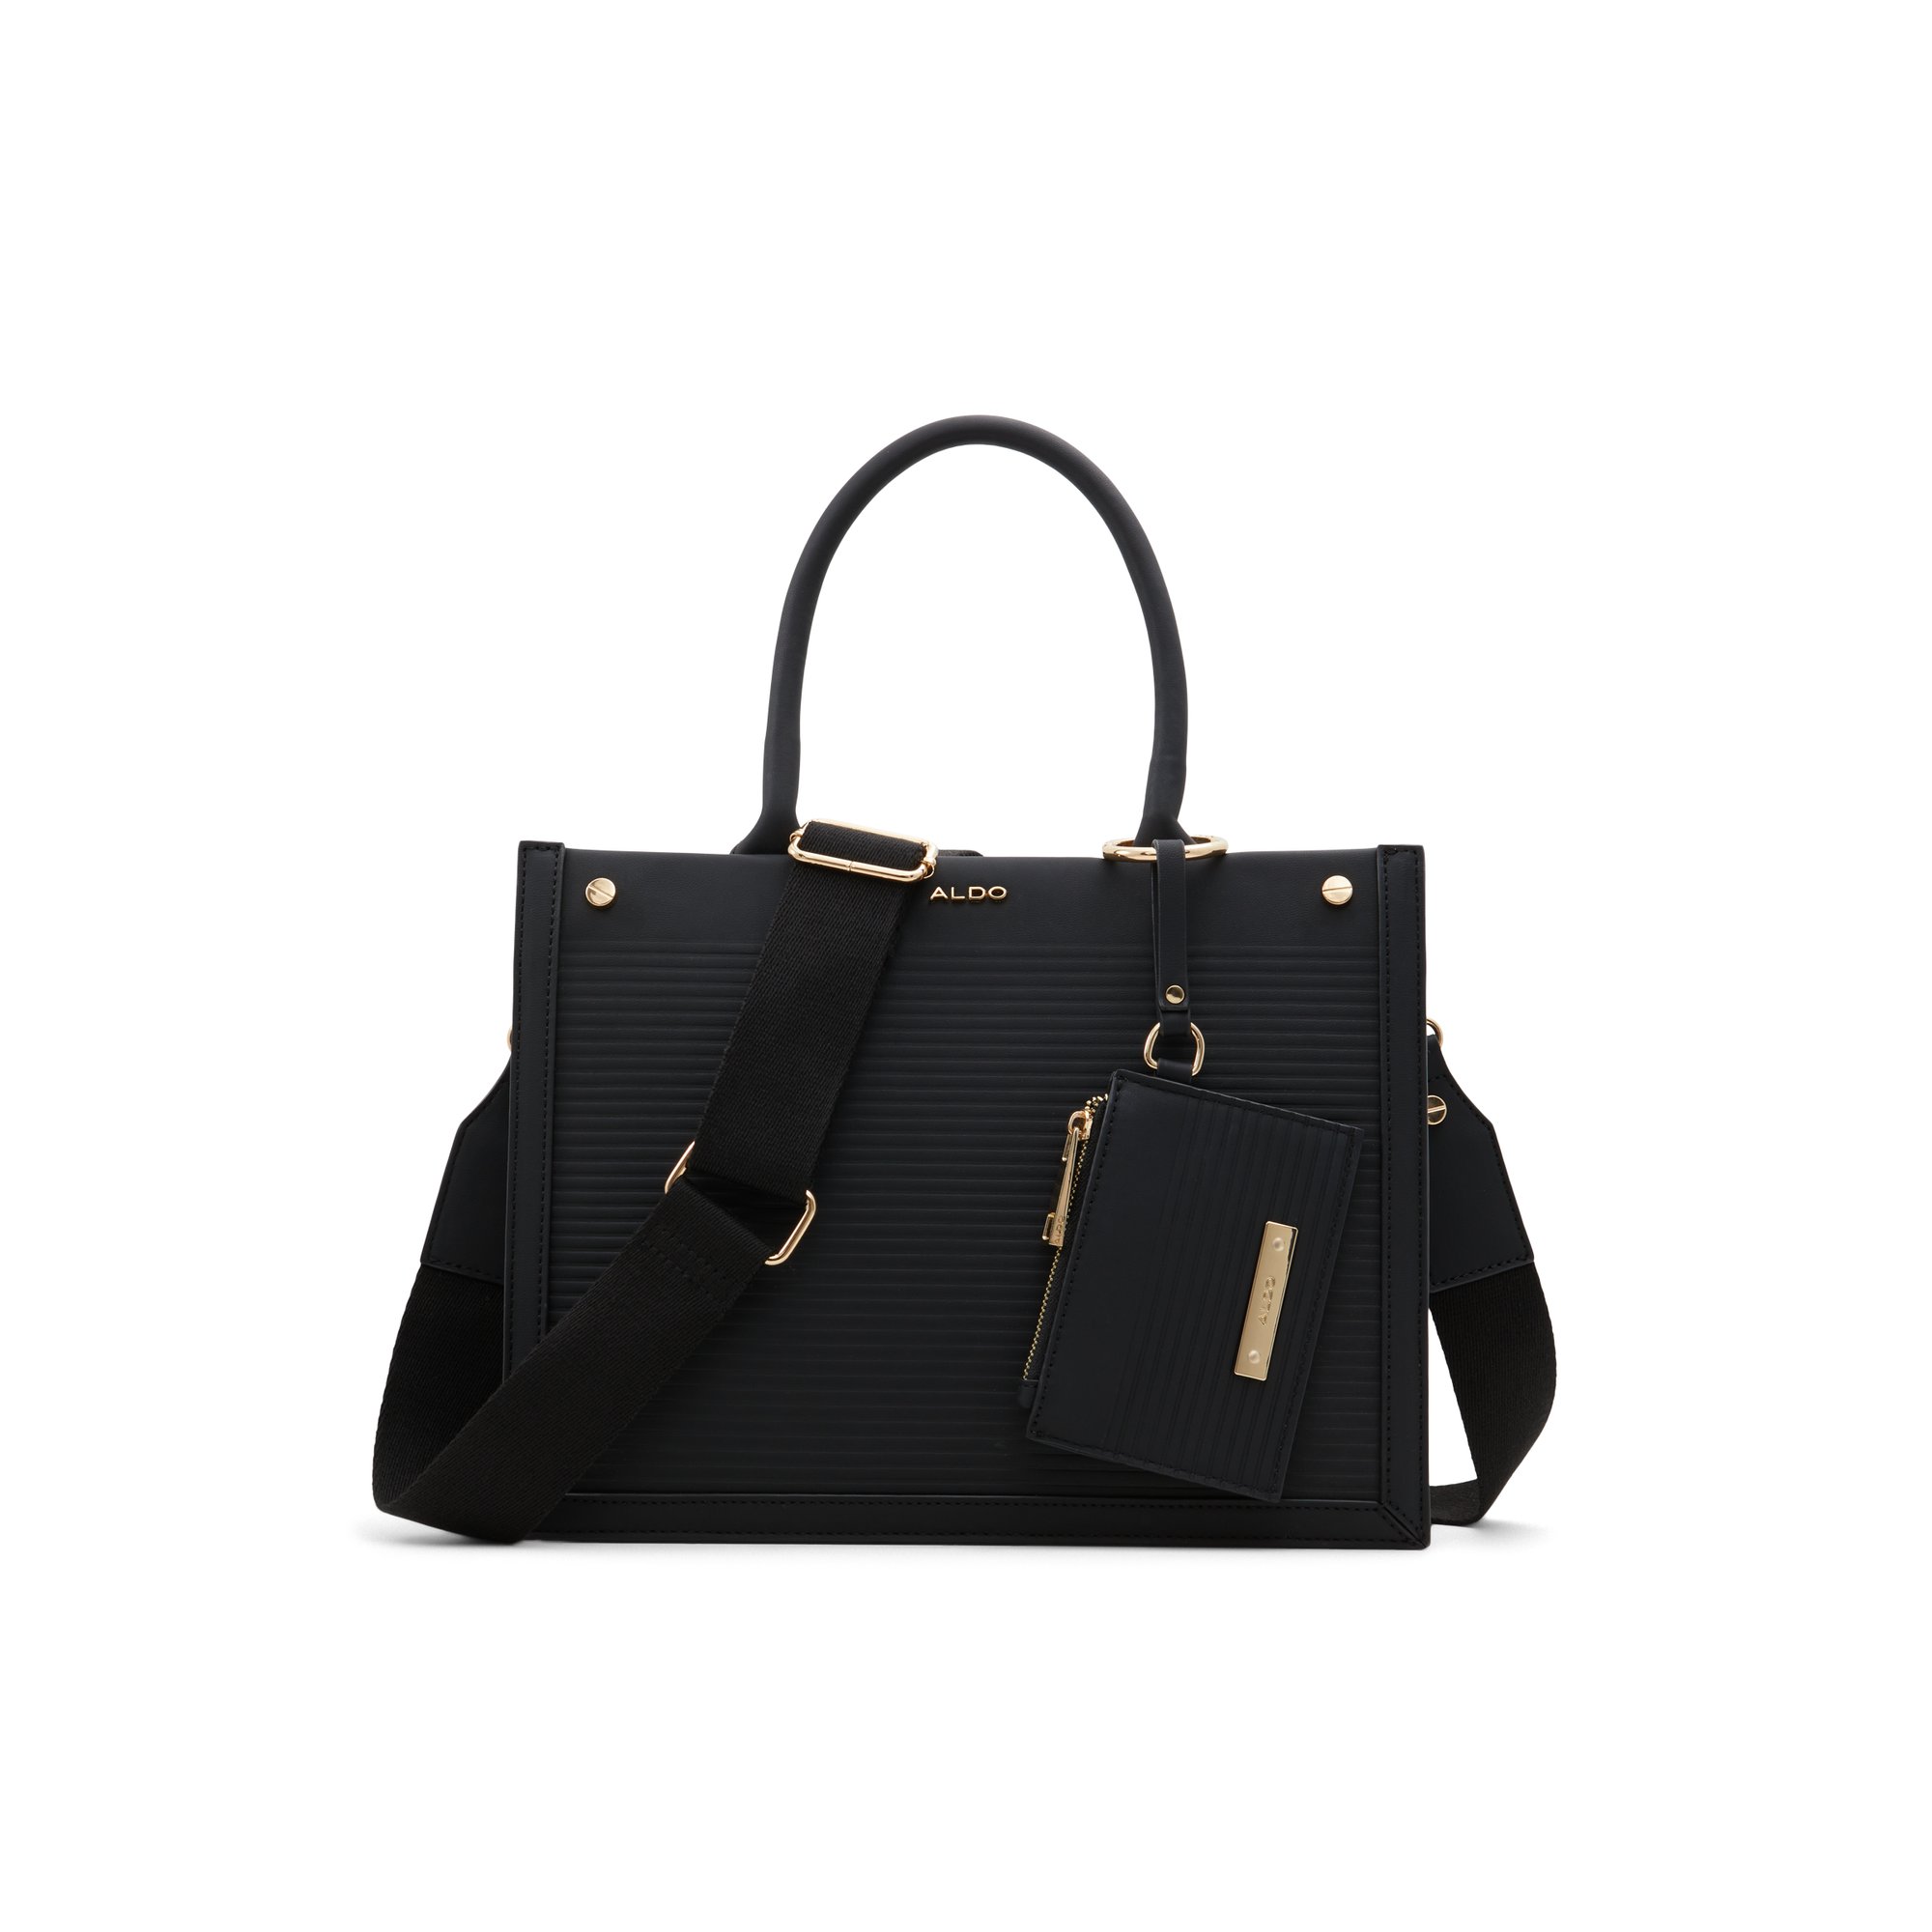 ALDO Daspias - Women's Handbags Totes - Black